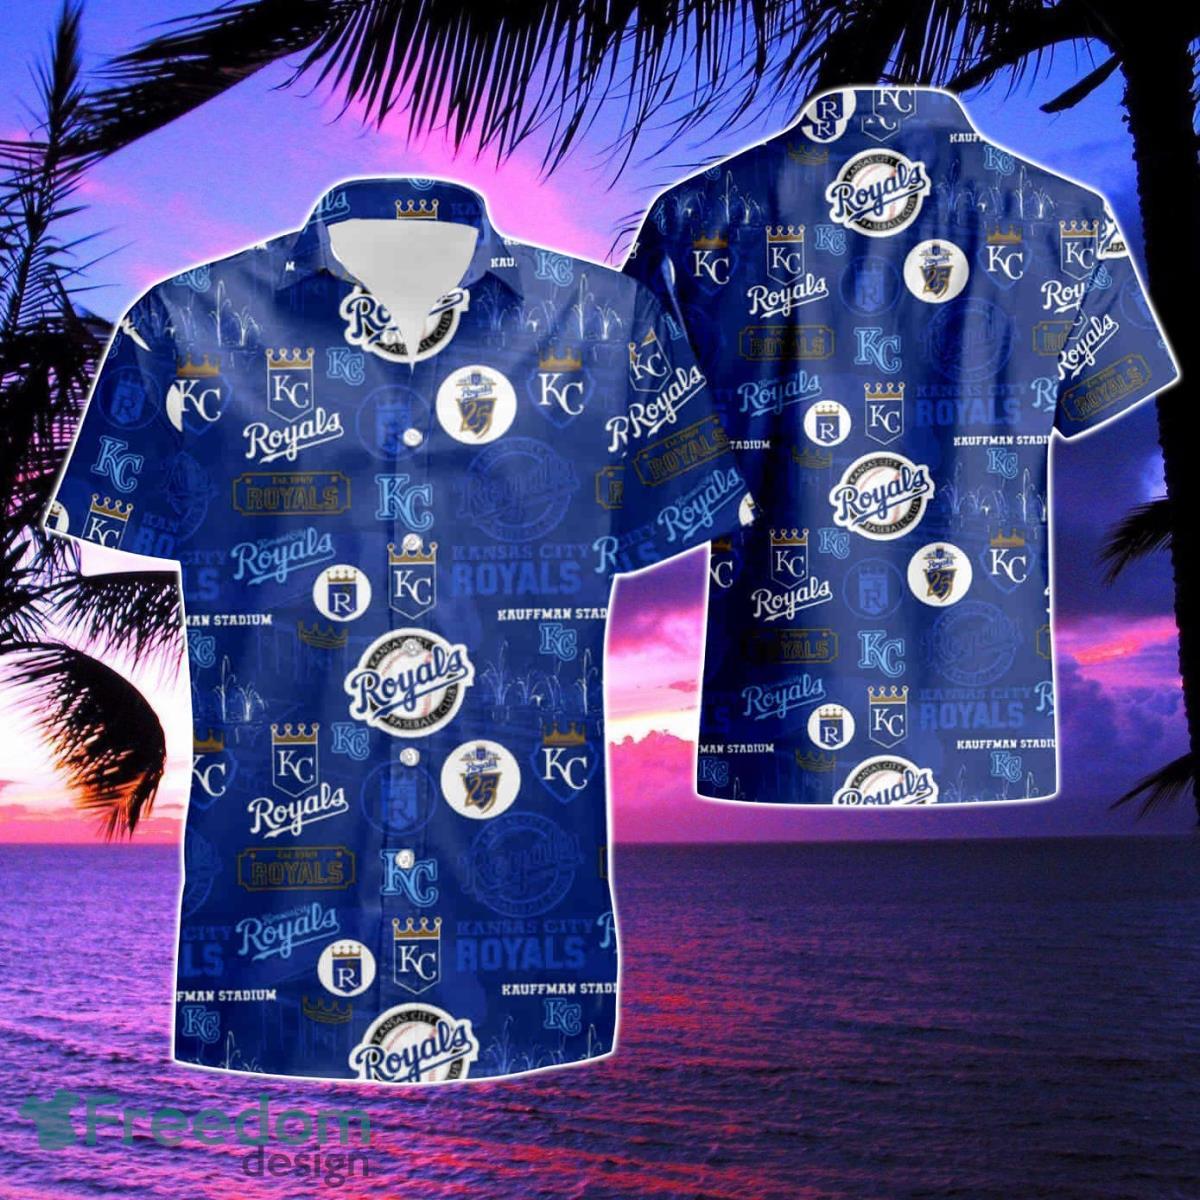 Kansas City Royals Hawaiian Shirt And Shorts Inspired By Kc Royals